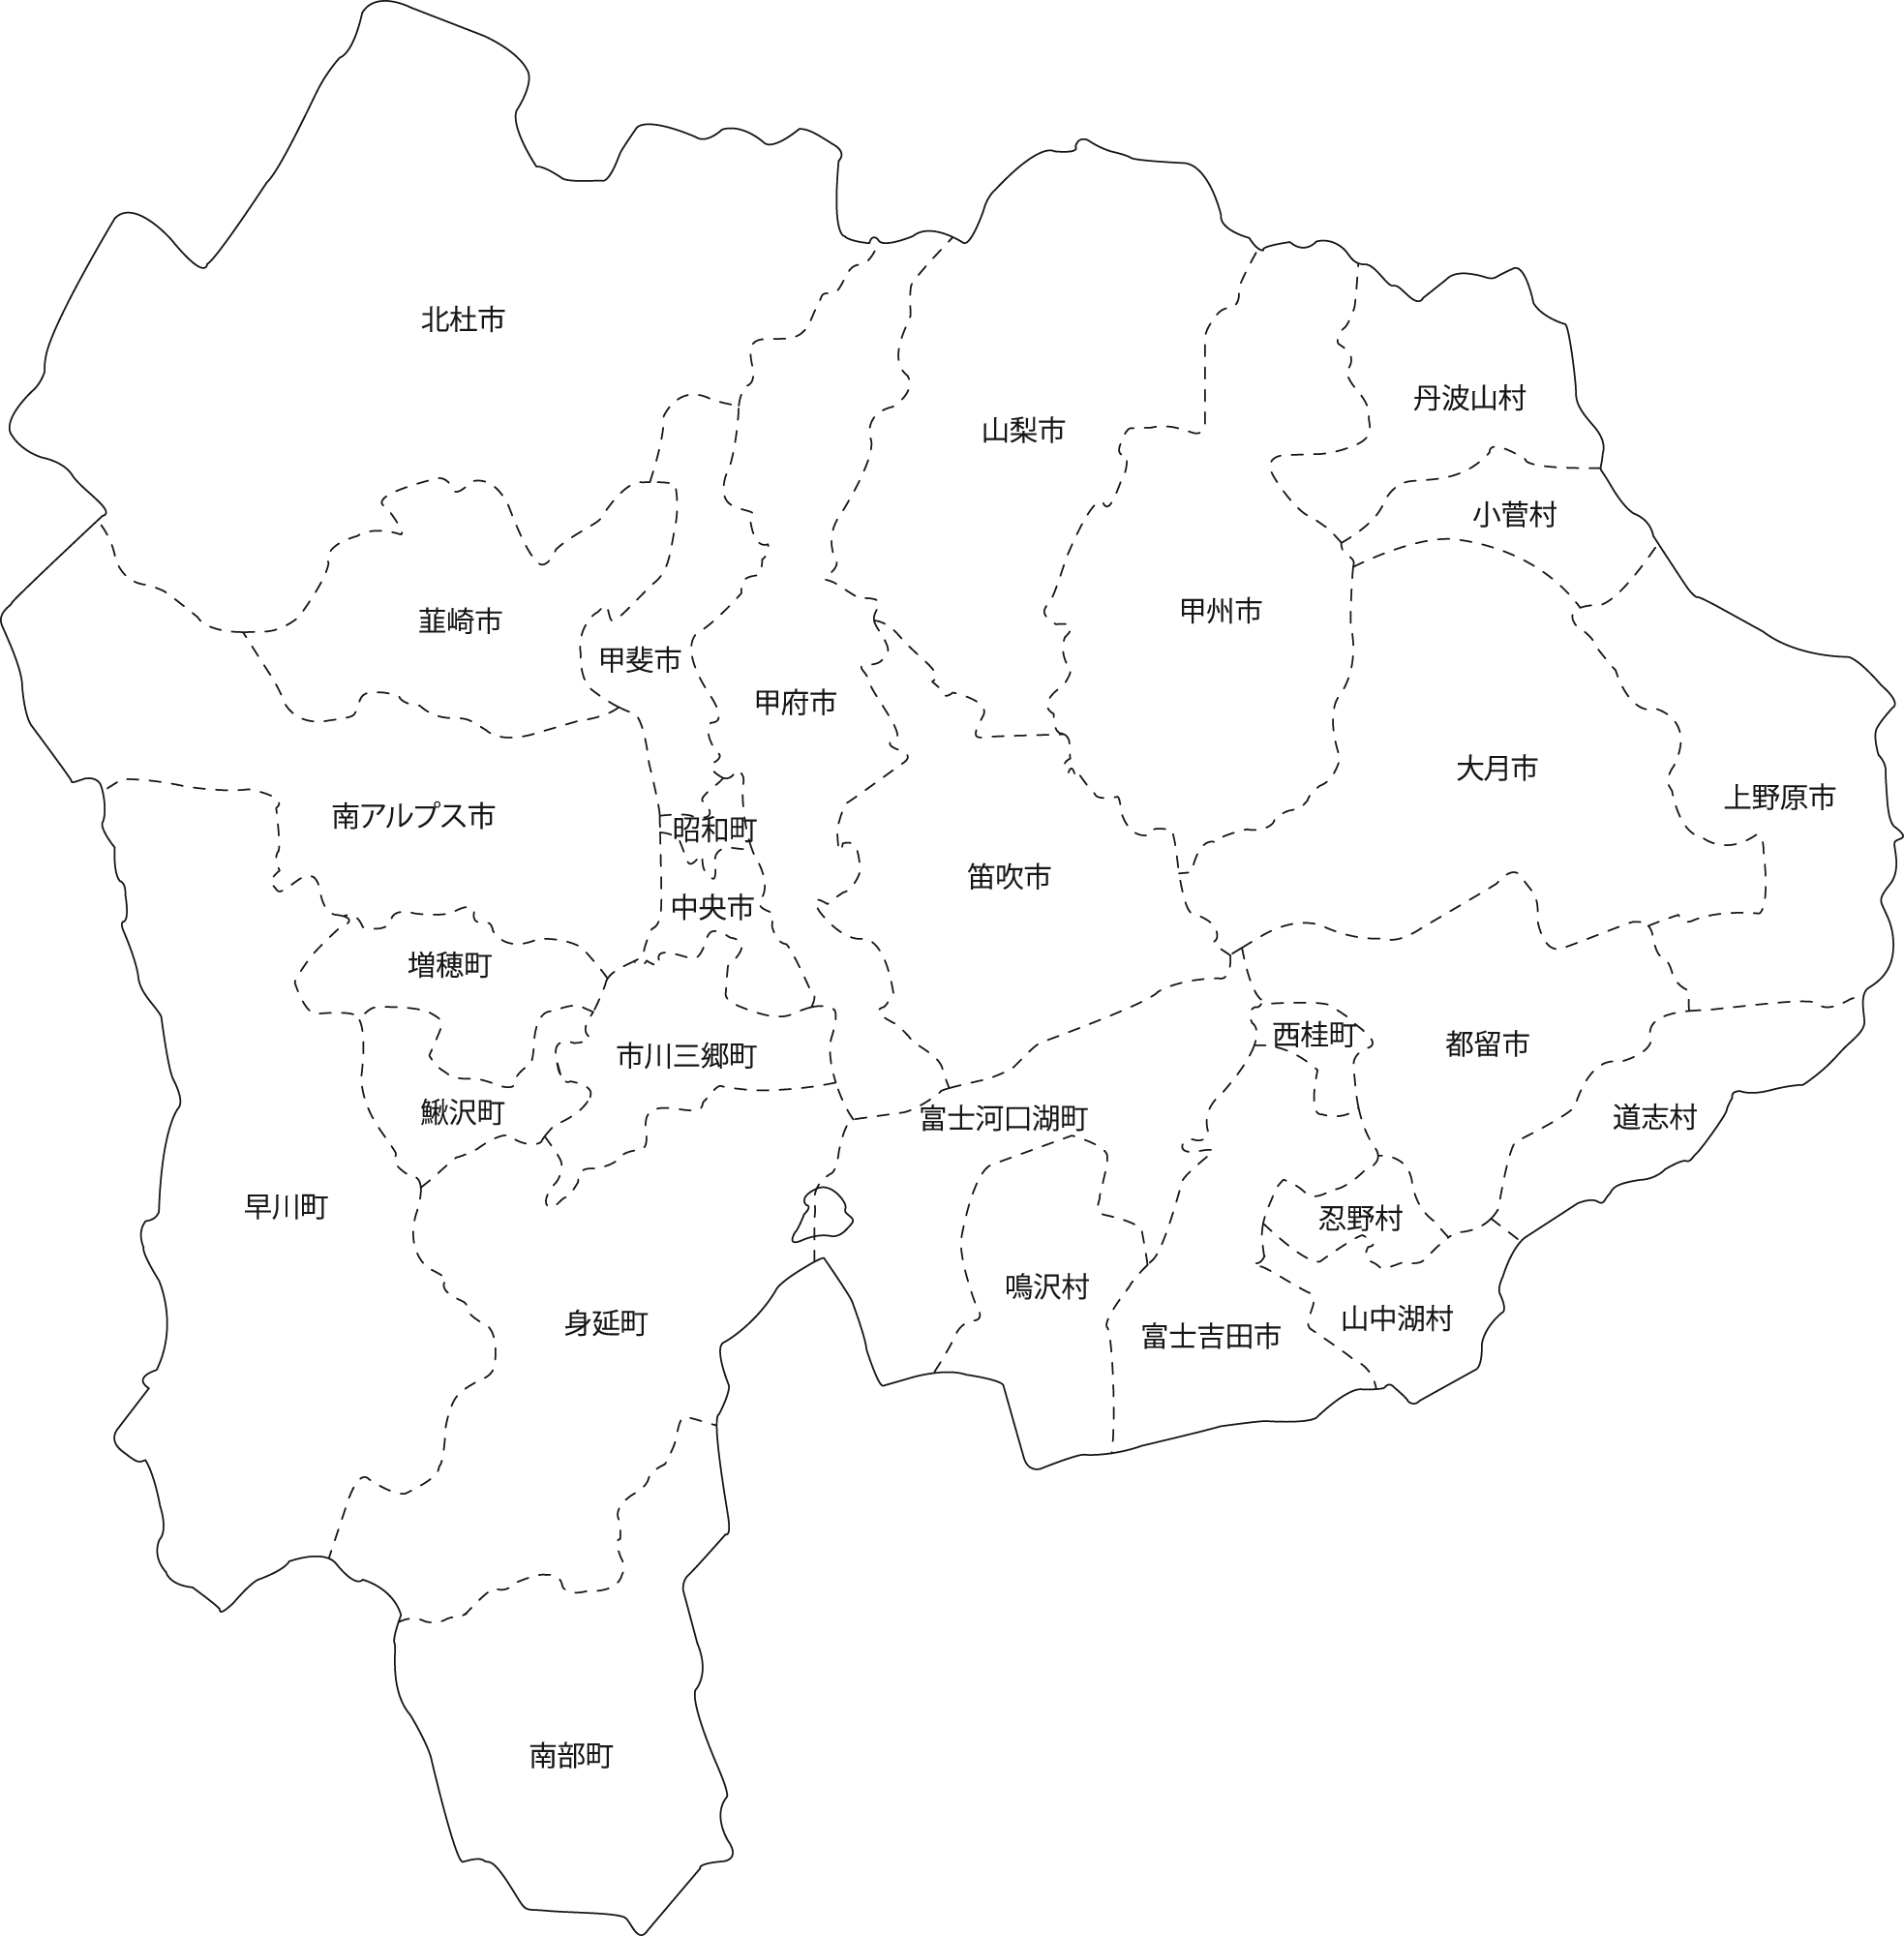 山梨県地図